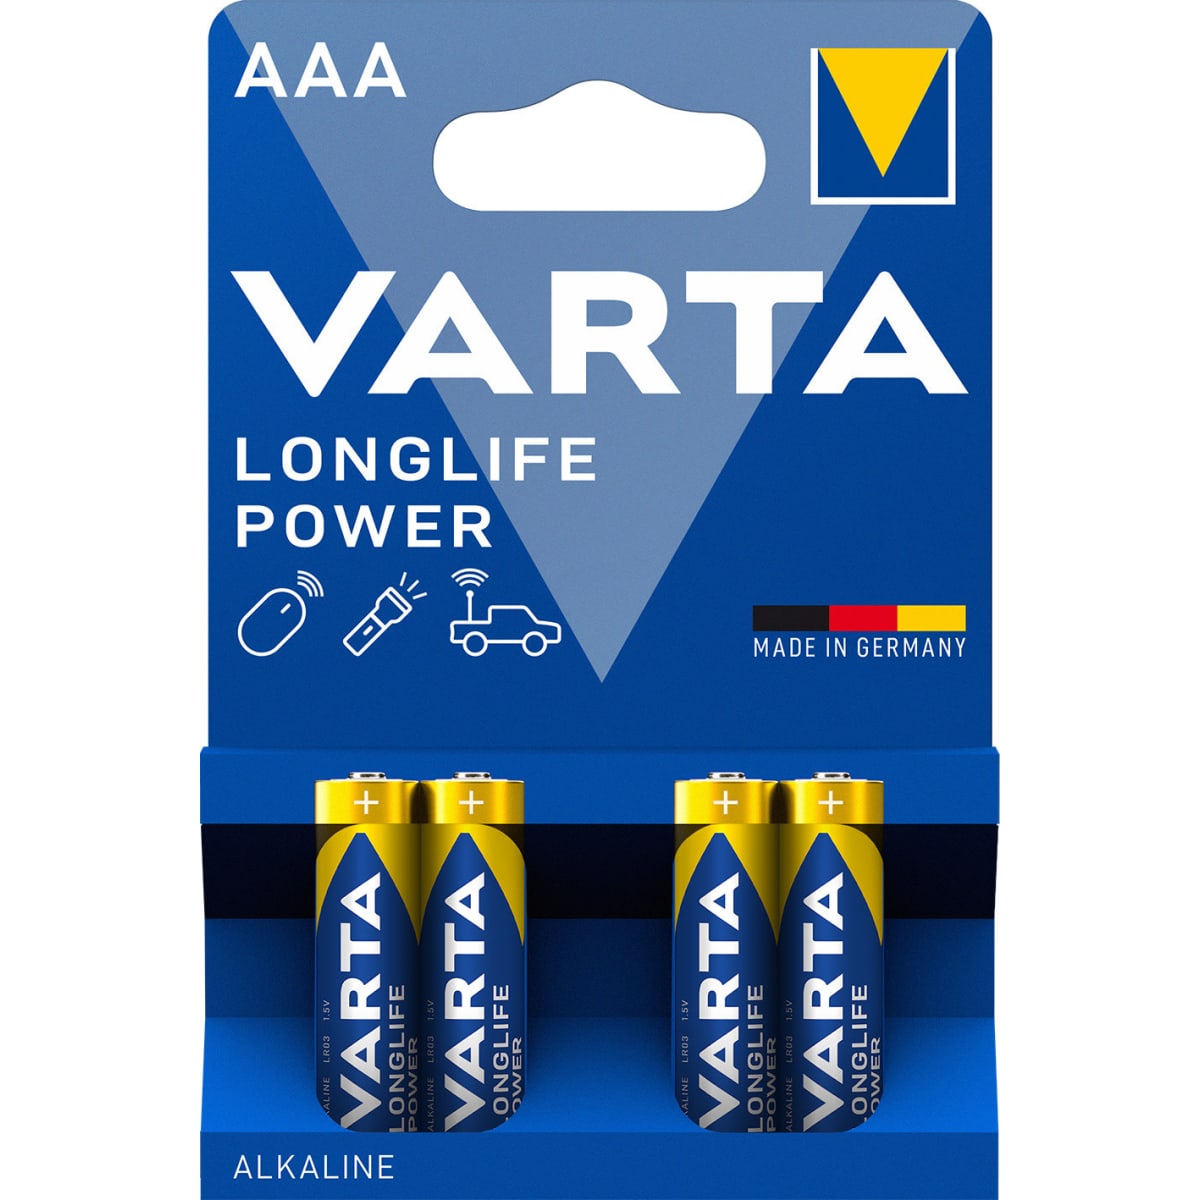 Varta Longlife Power AAA 4 kpl paristo  verkkokauppa